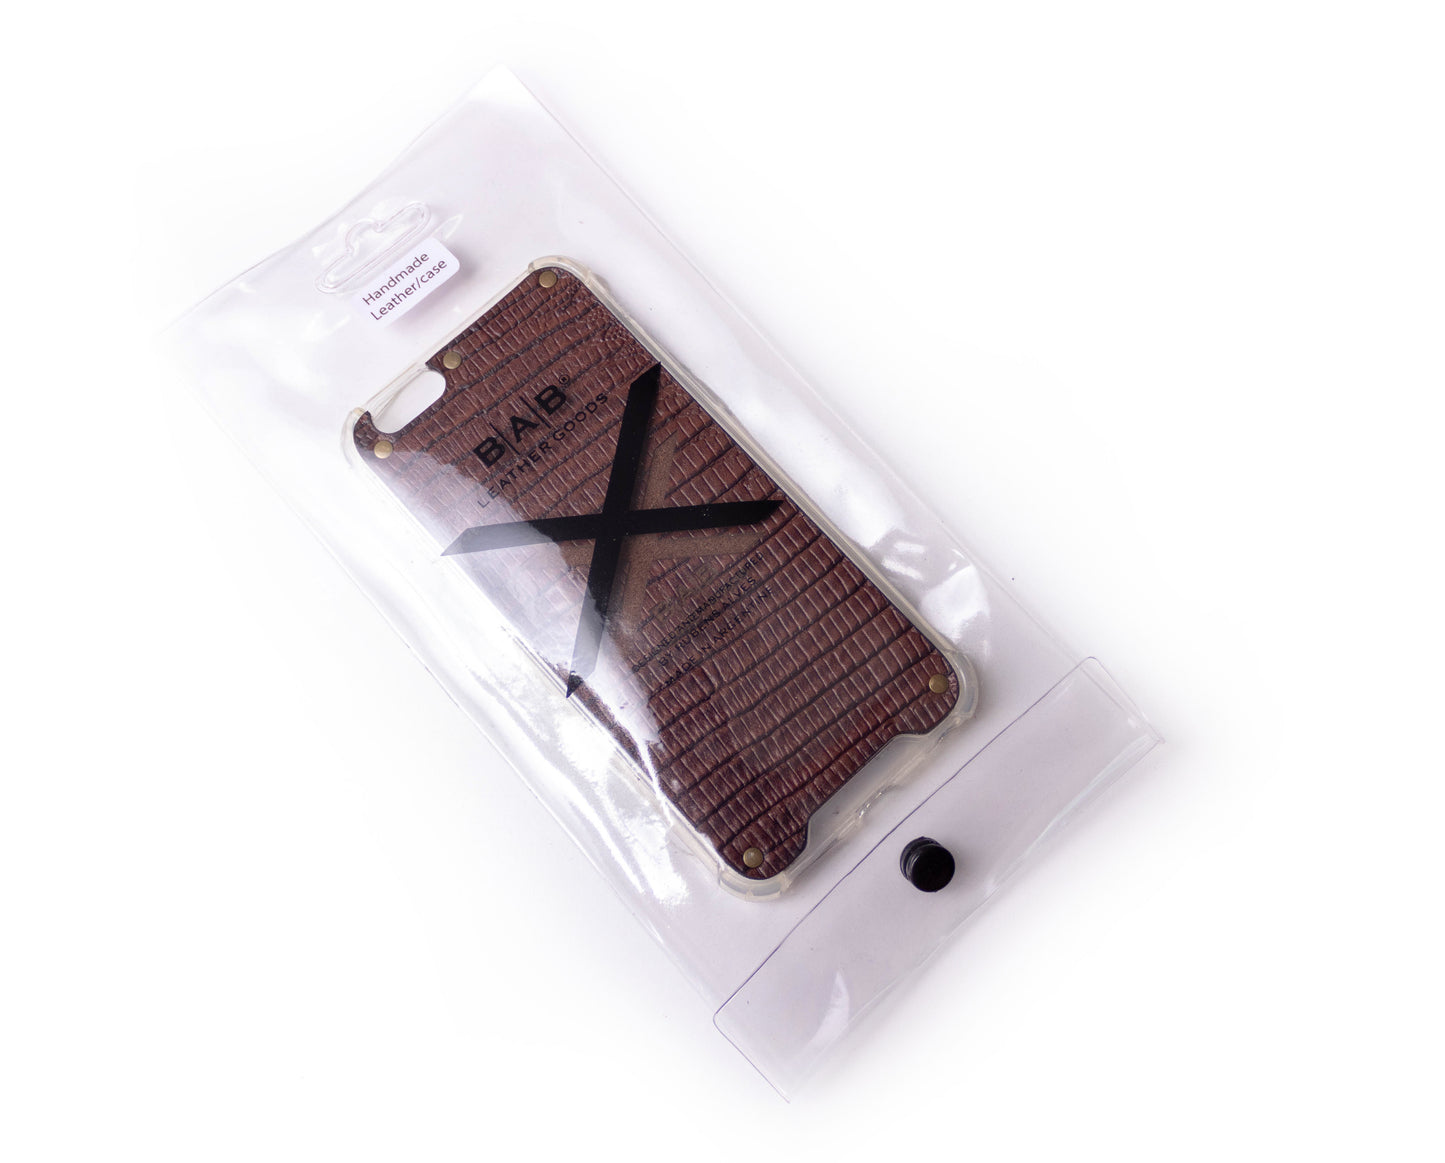 Funda para iPhone de Cuero Genuino Lagarto Marrón Texturizado cortado y grabado con láser, 5 Remaches de Bronce.- F36